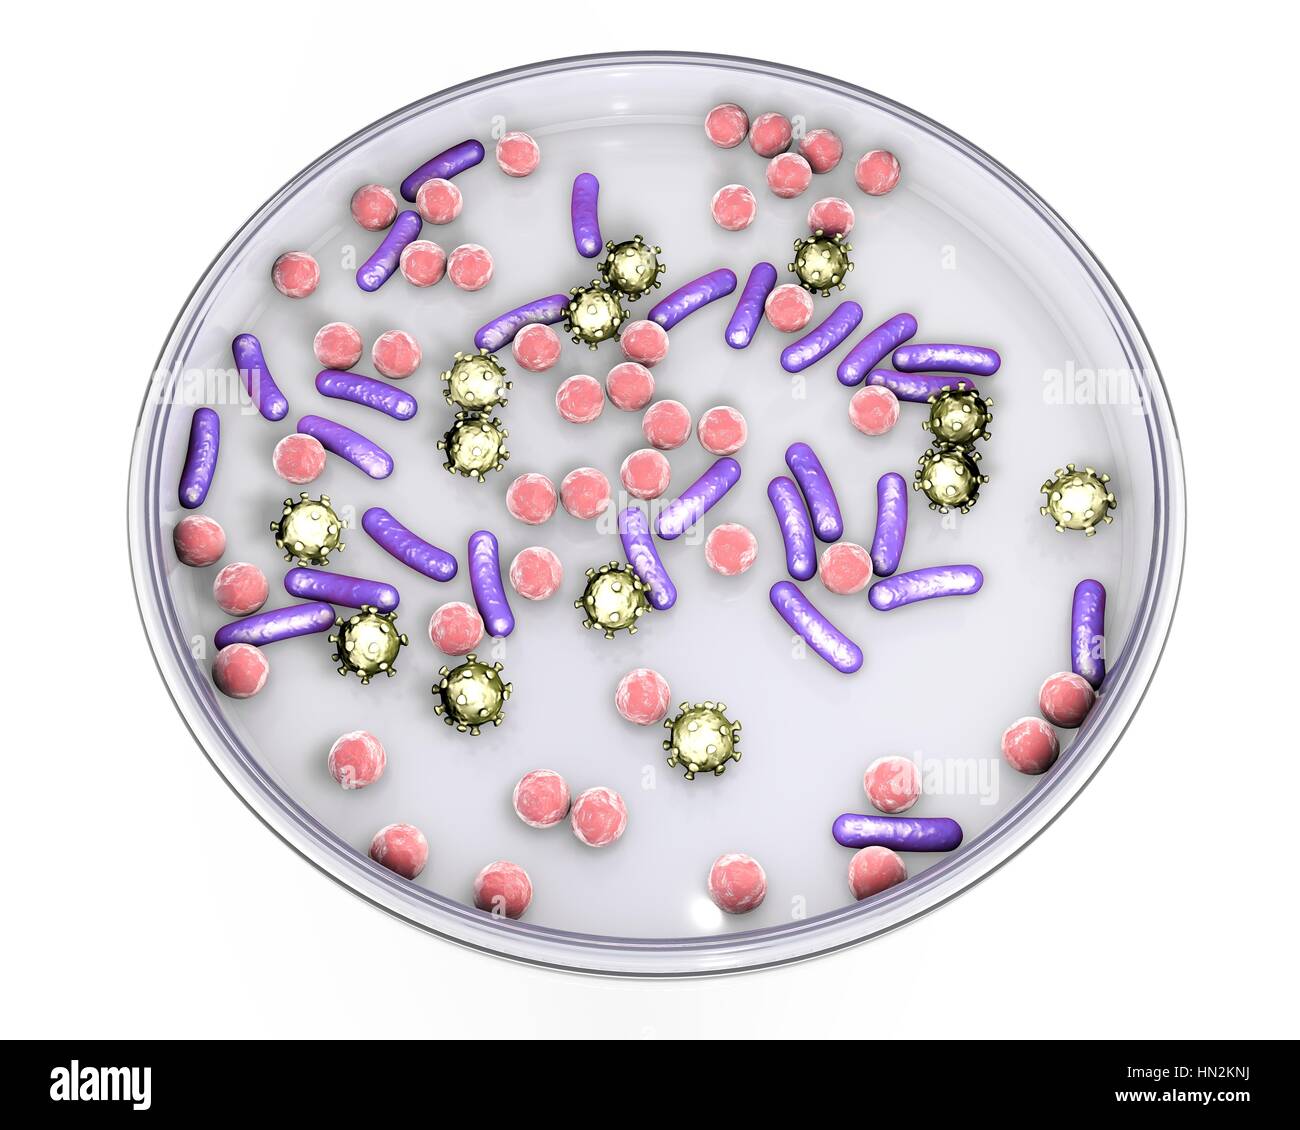 Boîte de Pétri avec les microbes, illustration de l'ordinateur. Image conceptuelle de diagnostic en laboratoire des maladies infectieuses. Banque D'Images